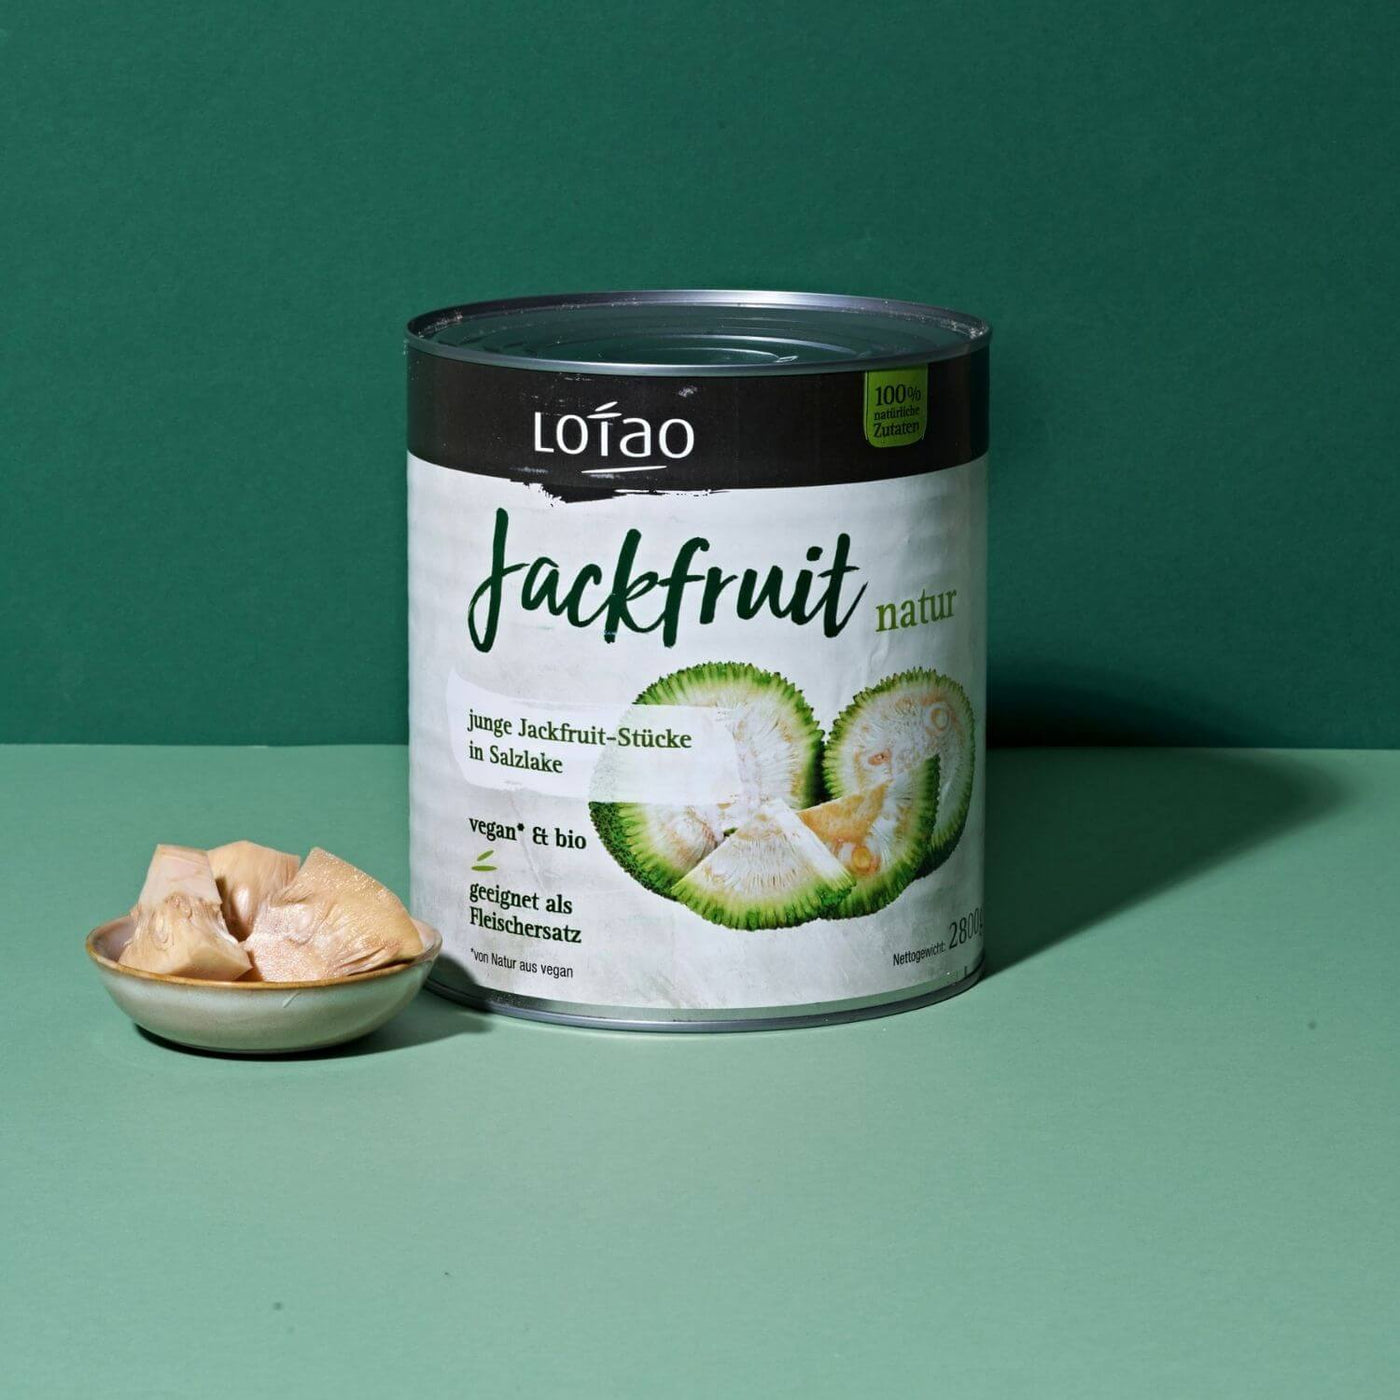 Jackfruit Natur Großgebinde-Dose mit Jackfrucht Stücken in Schale in Bio-Qualität von Lotao als veganer Fleischersatz auf natürlicher Basis